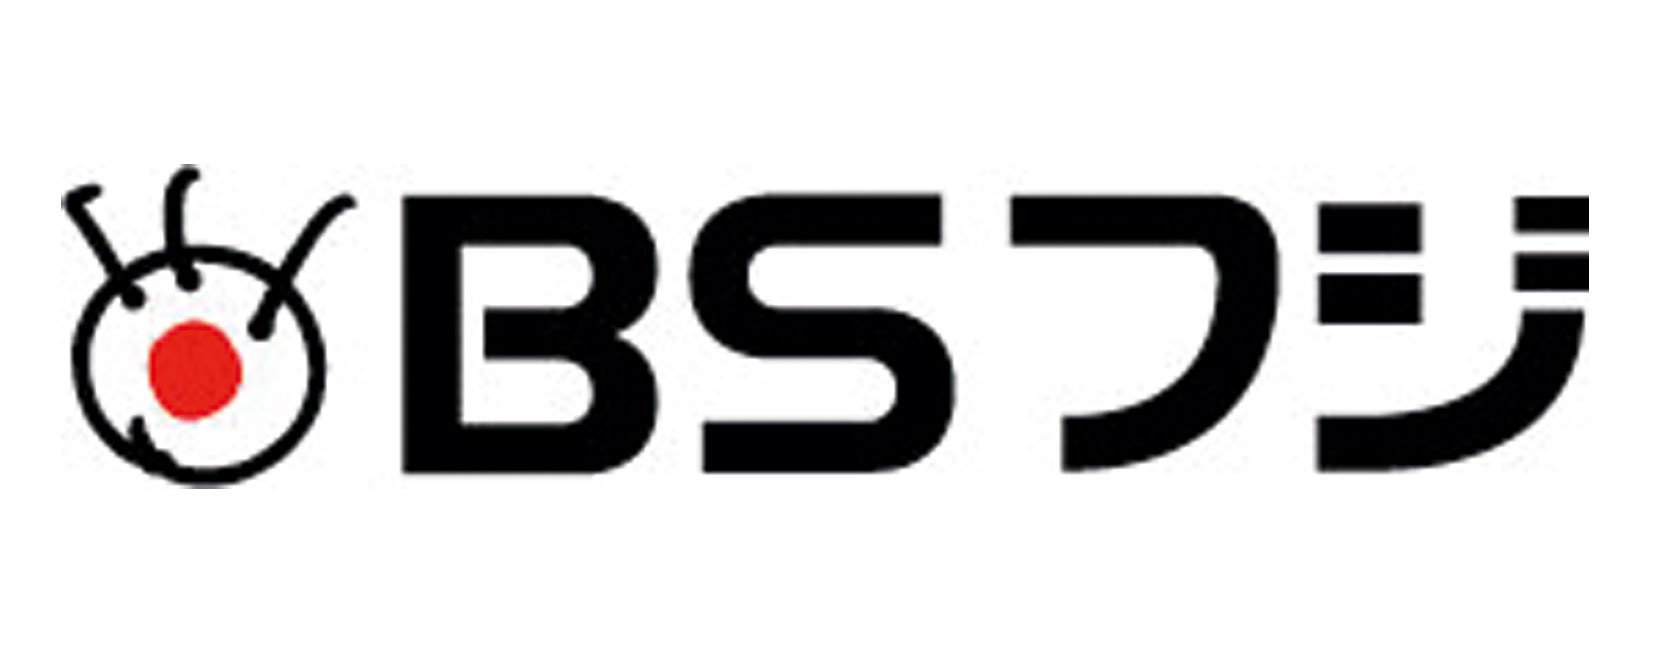 bstbs